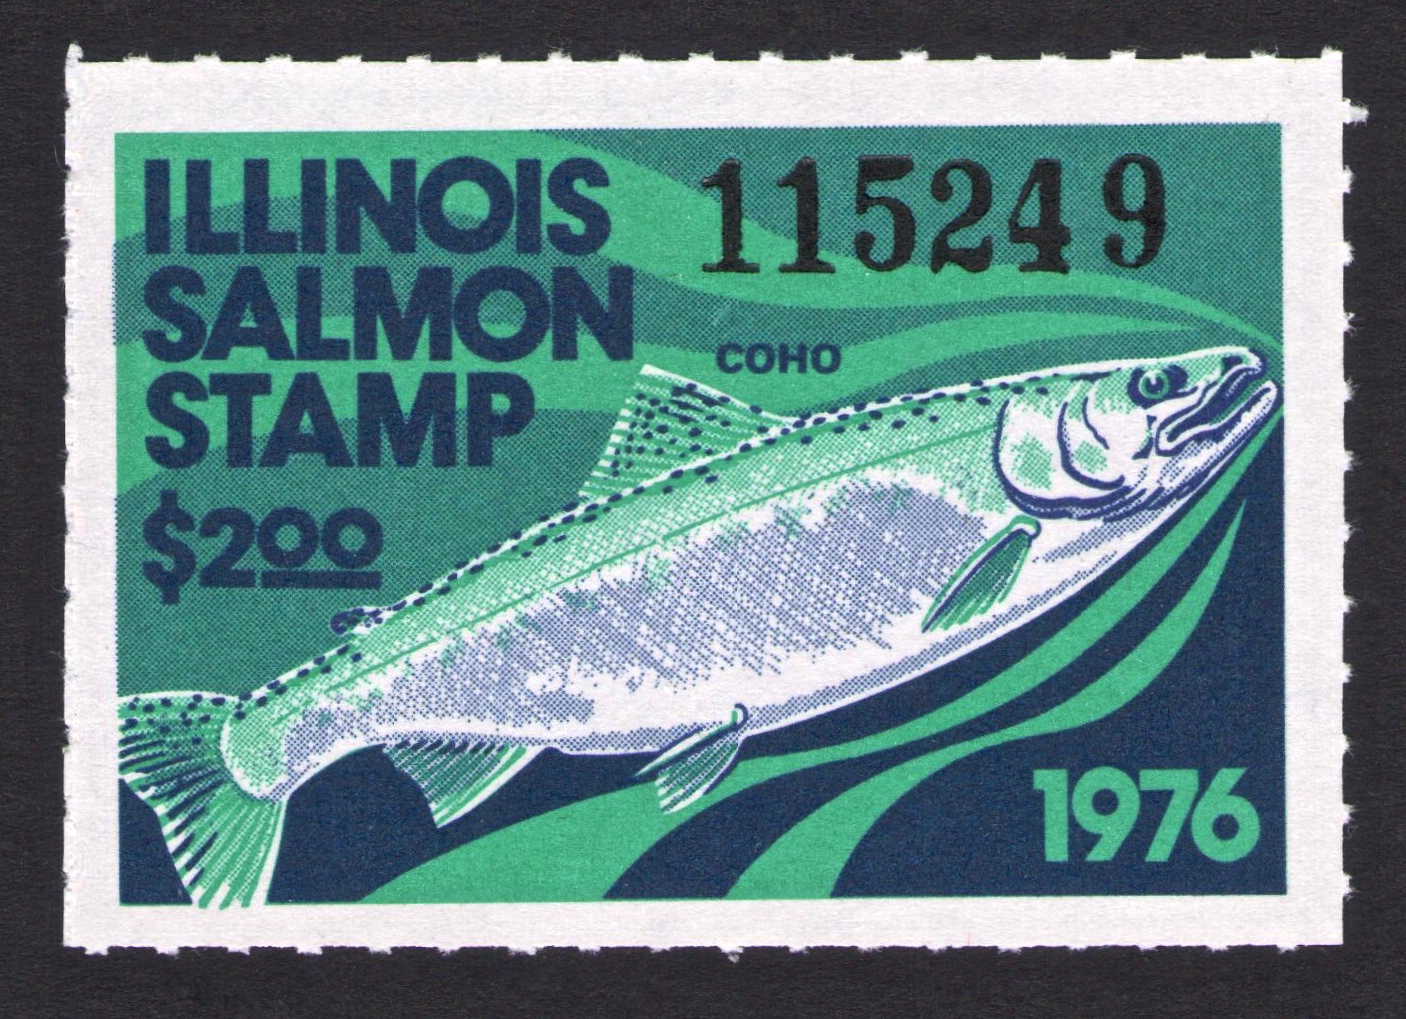 1976 Illinois Salmon